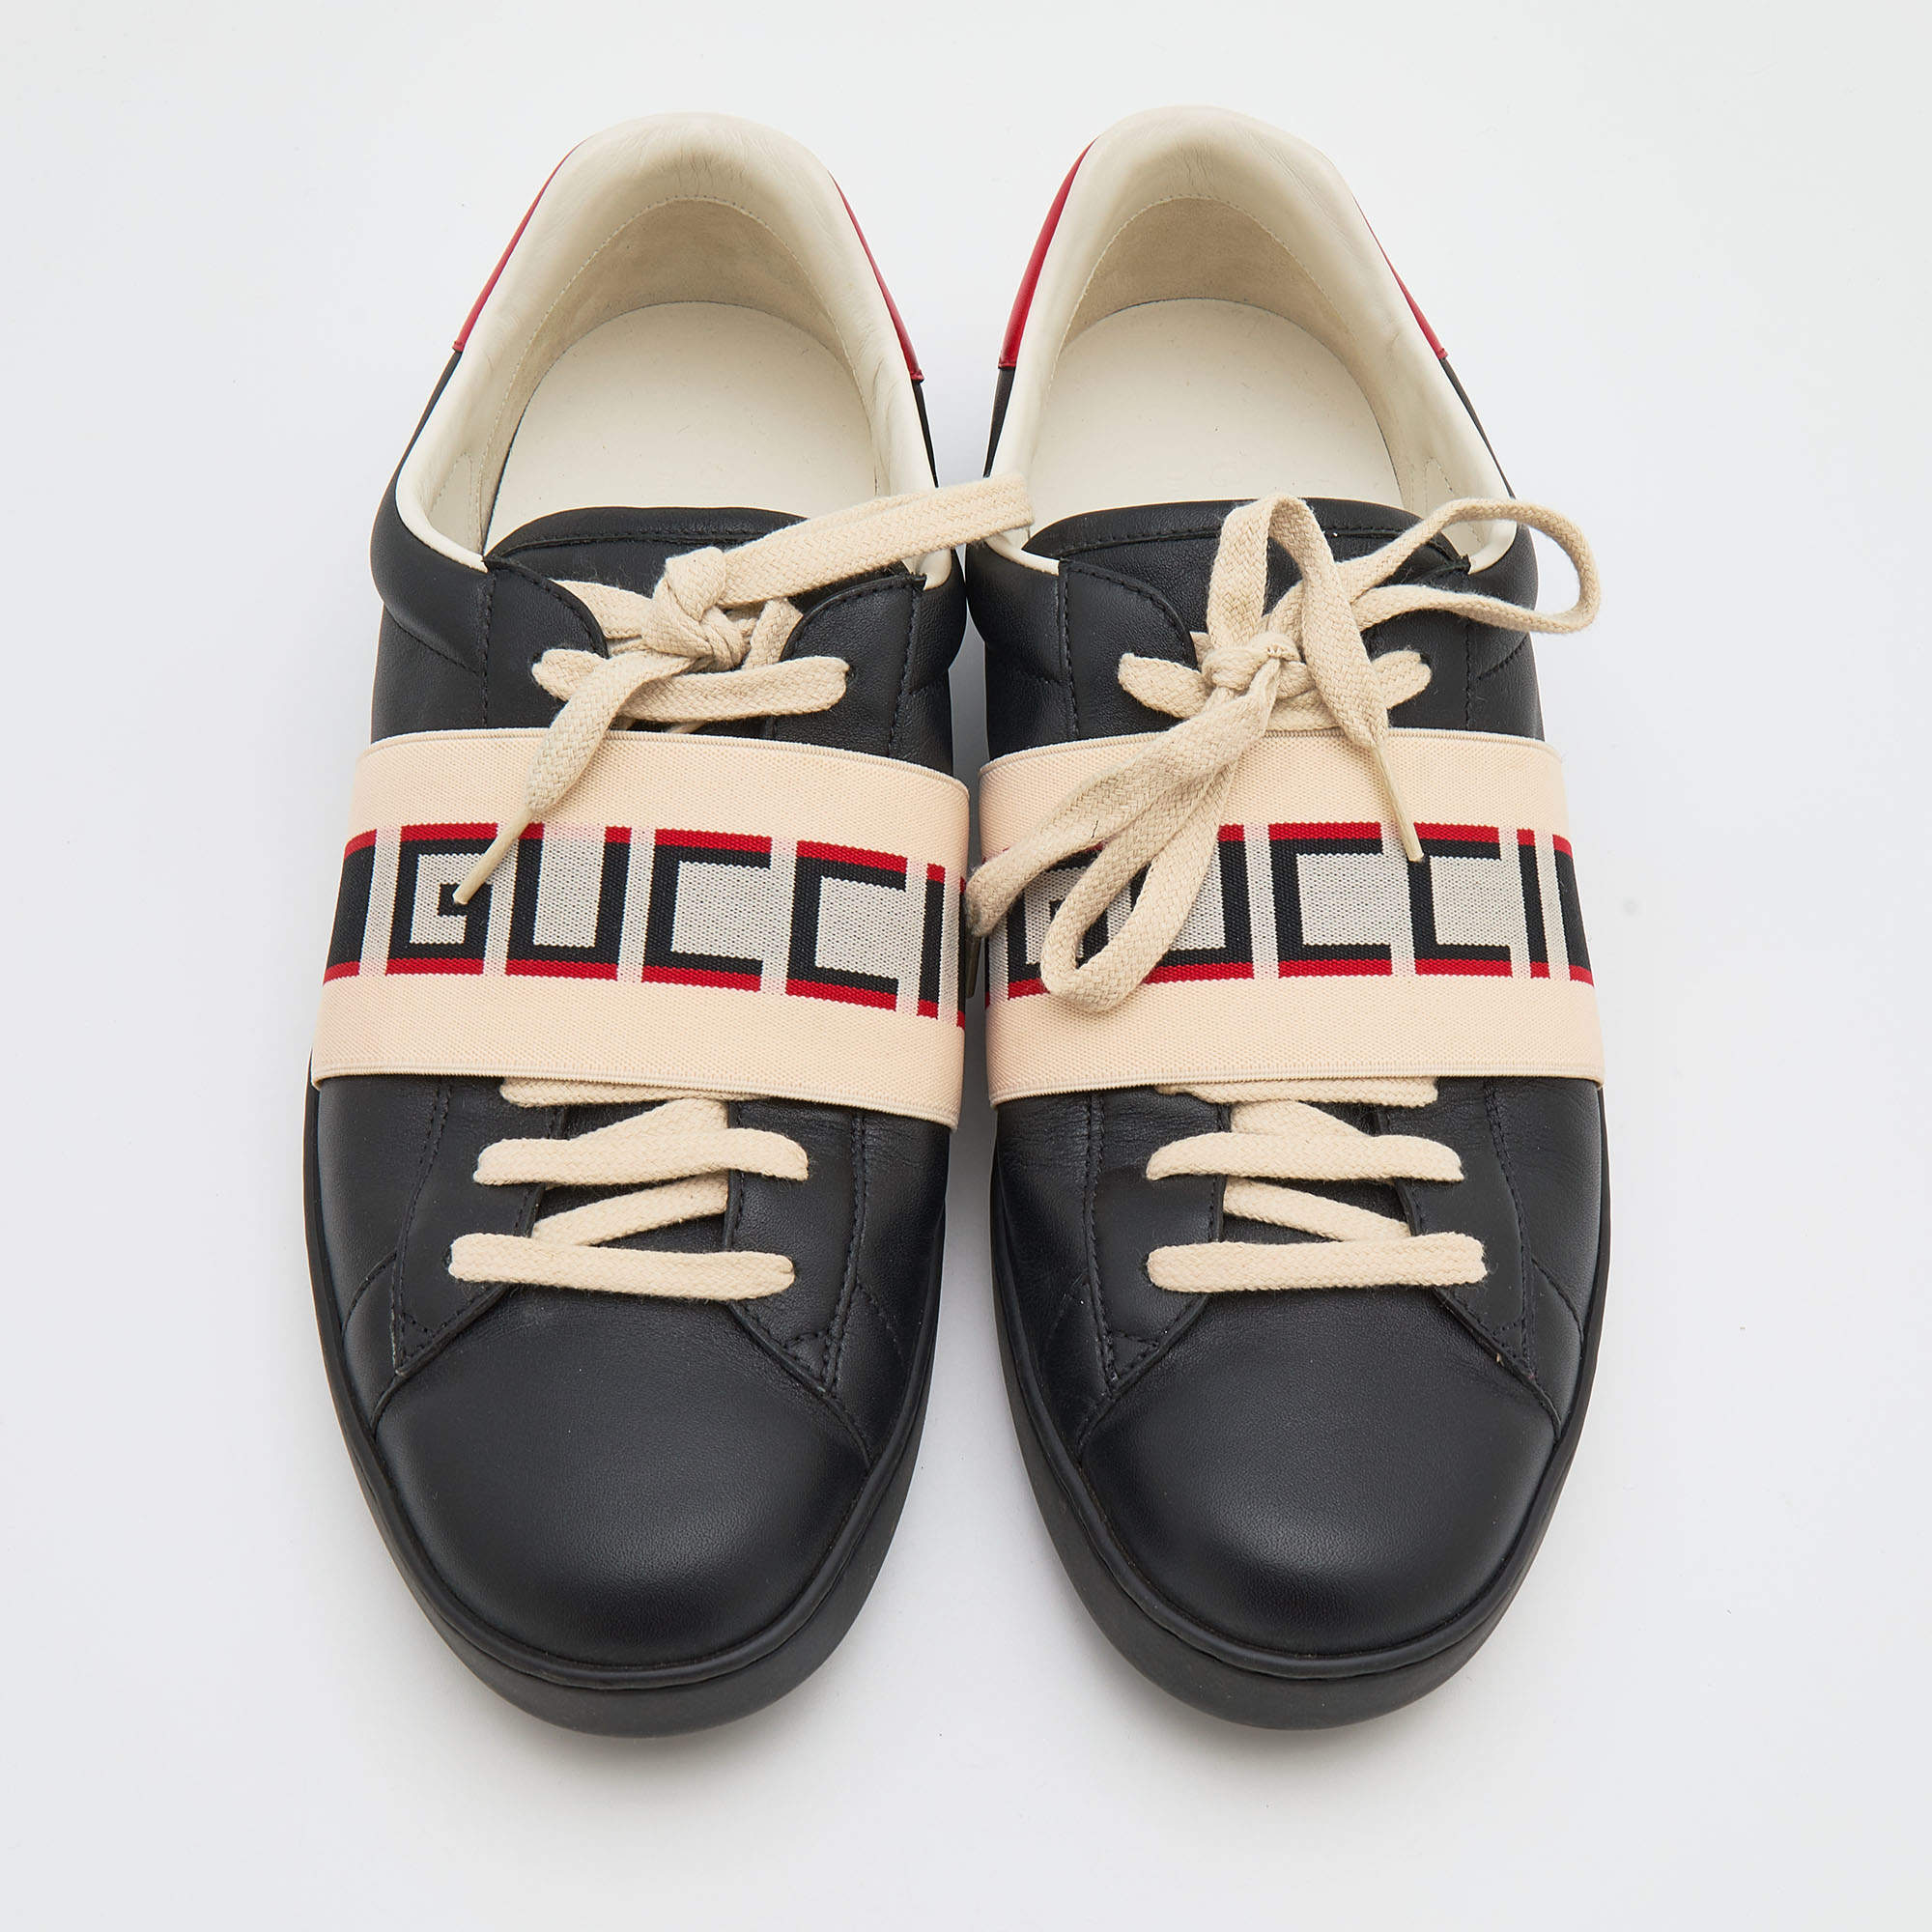 Authentic Designer bracelets Gucci - Escros Sneaker Shop